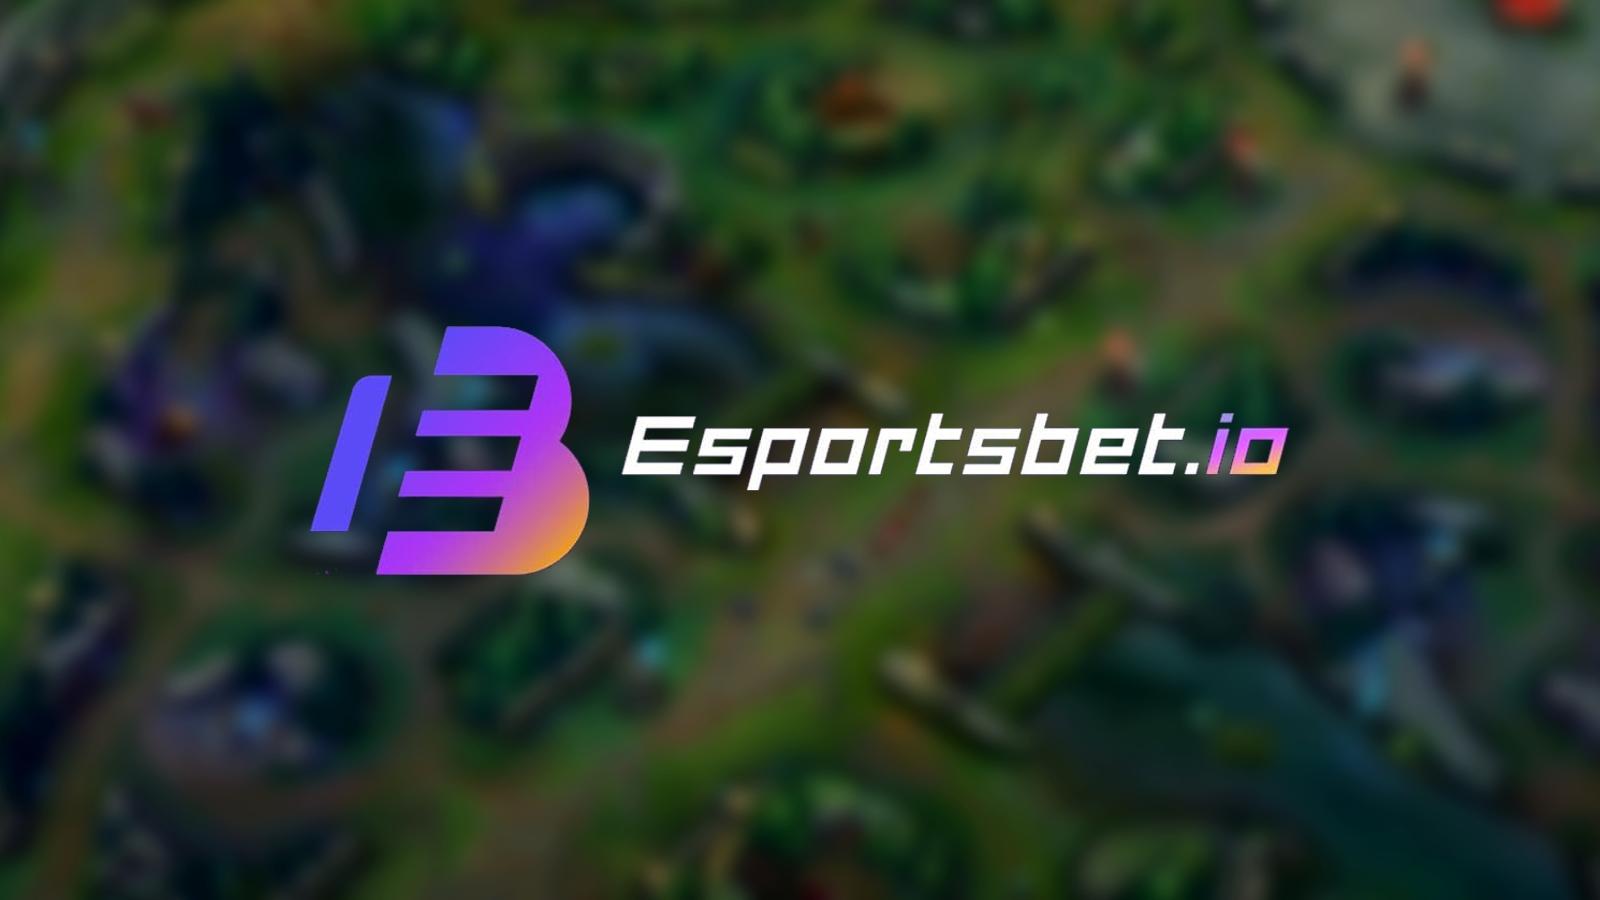 Esports bet logo over league of legends summoners rift